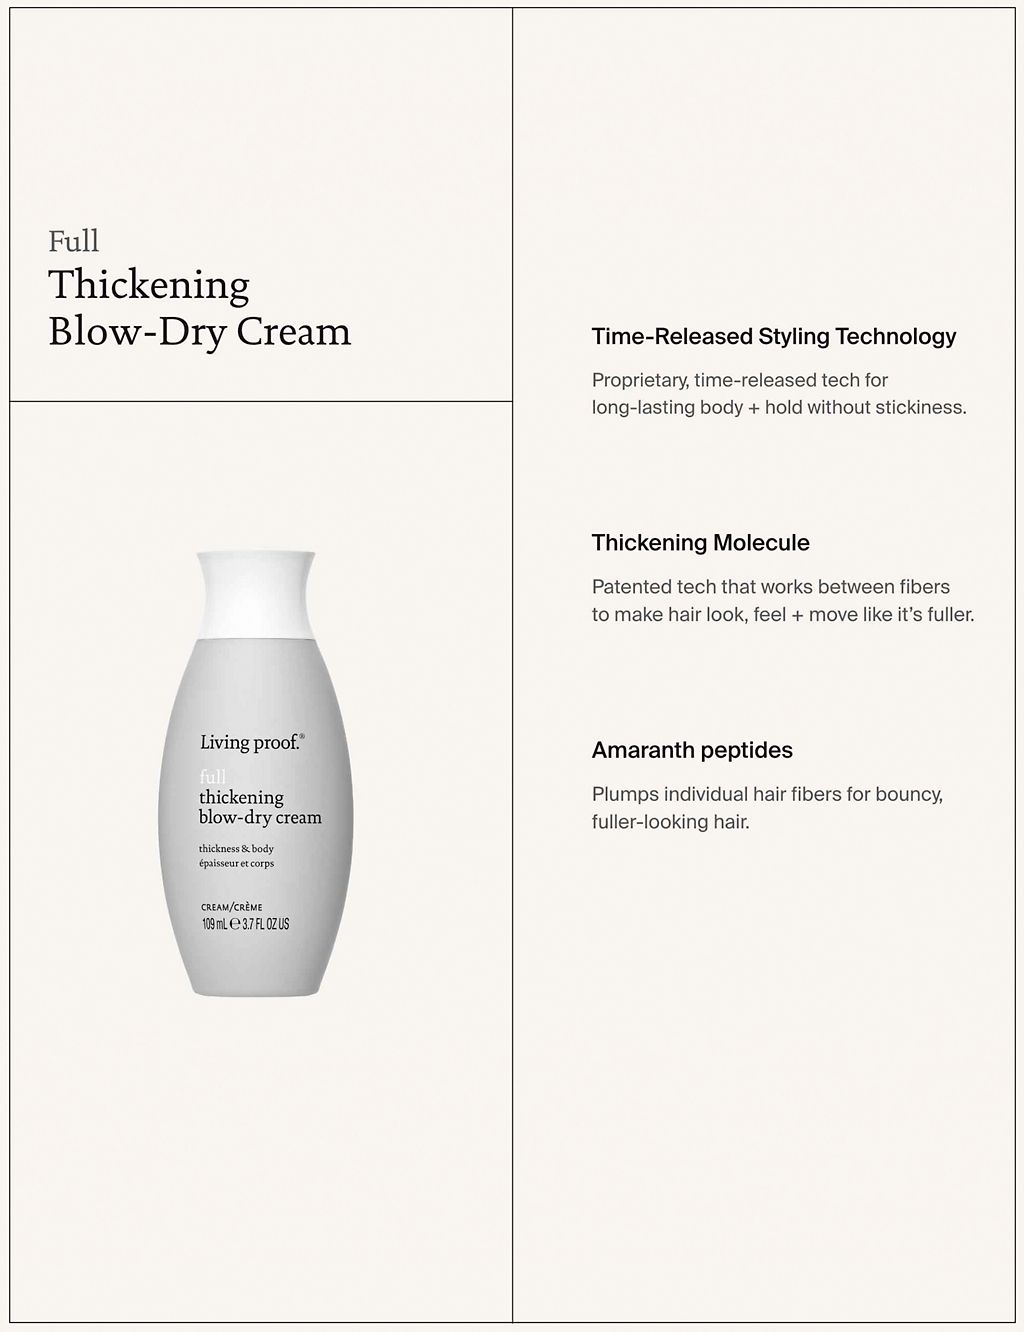 Full Thickening Blow-Dry Cream 109ml 1 of 8